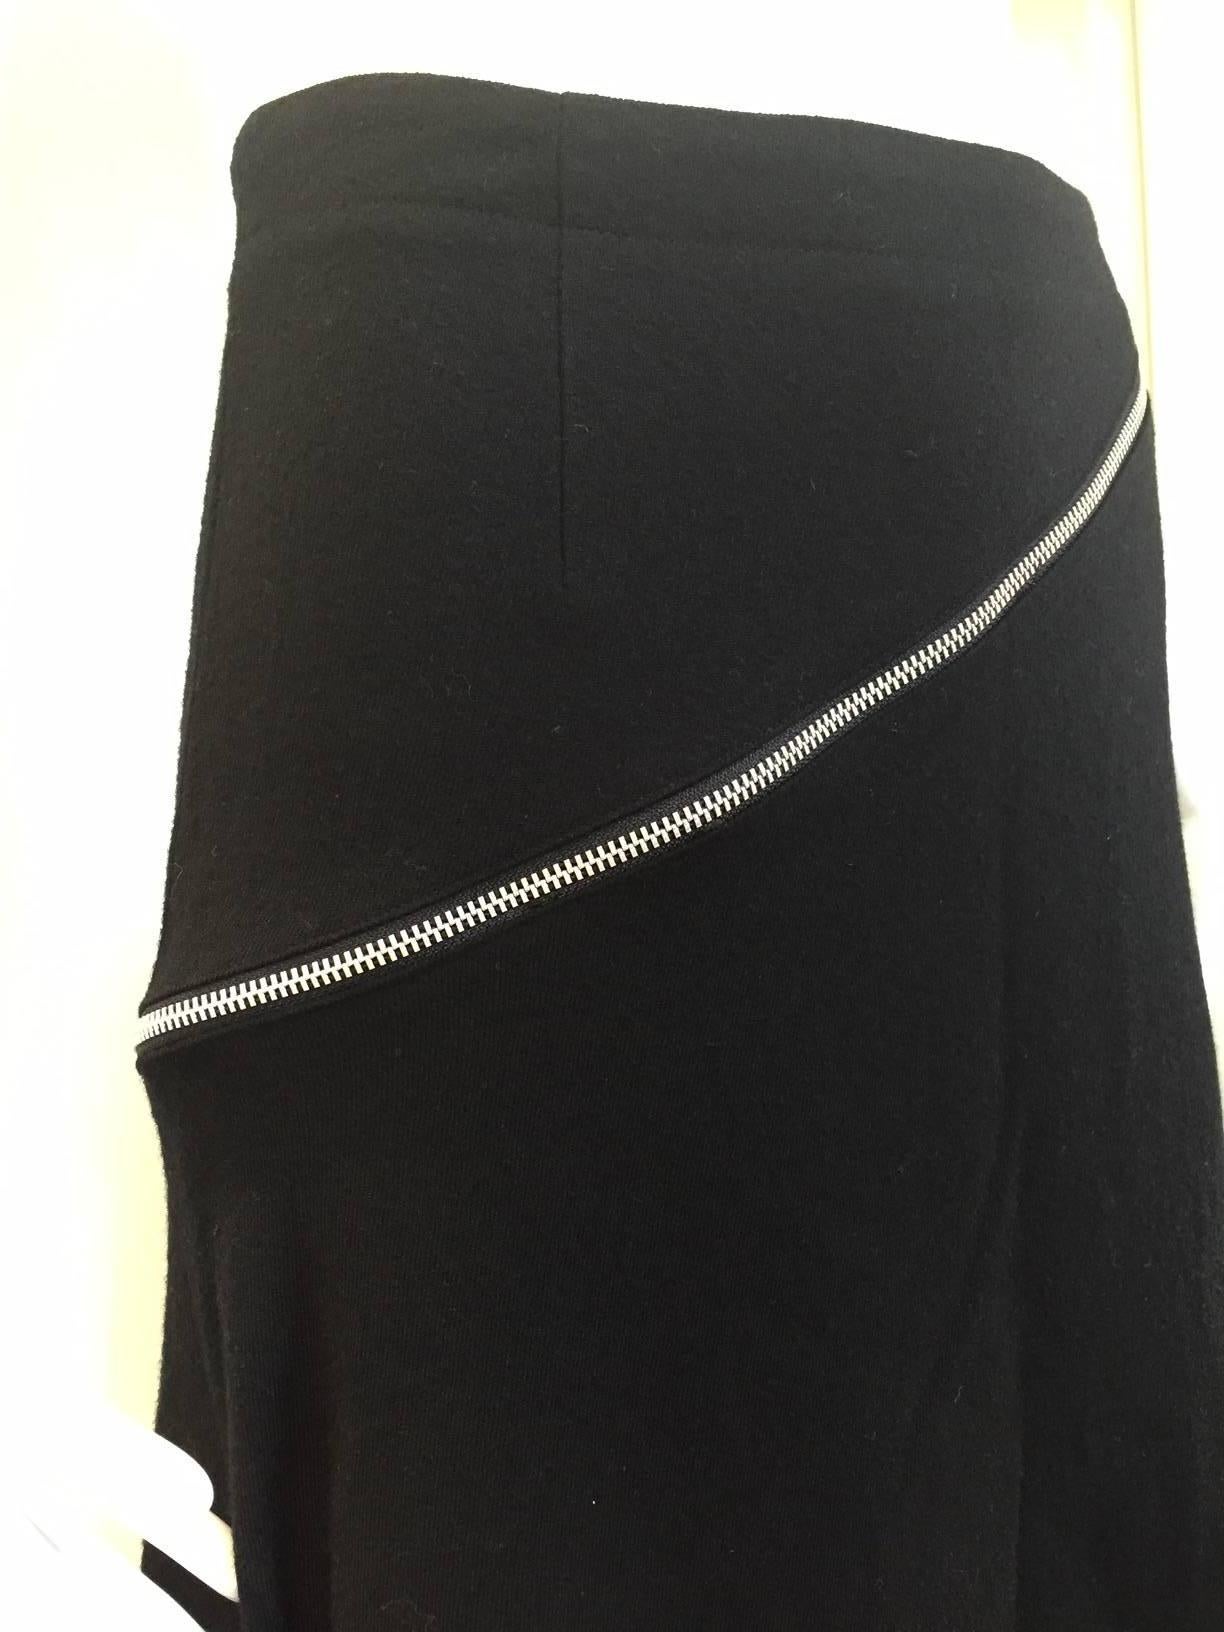 2000s Comme des garcons black wool diagonal zipper skirt.
Waist: 25